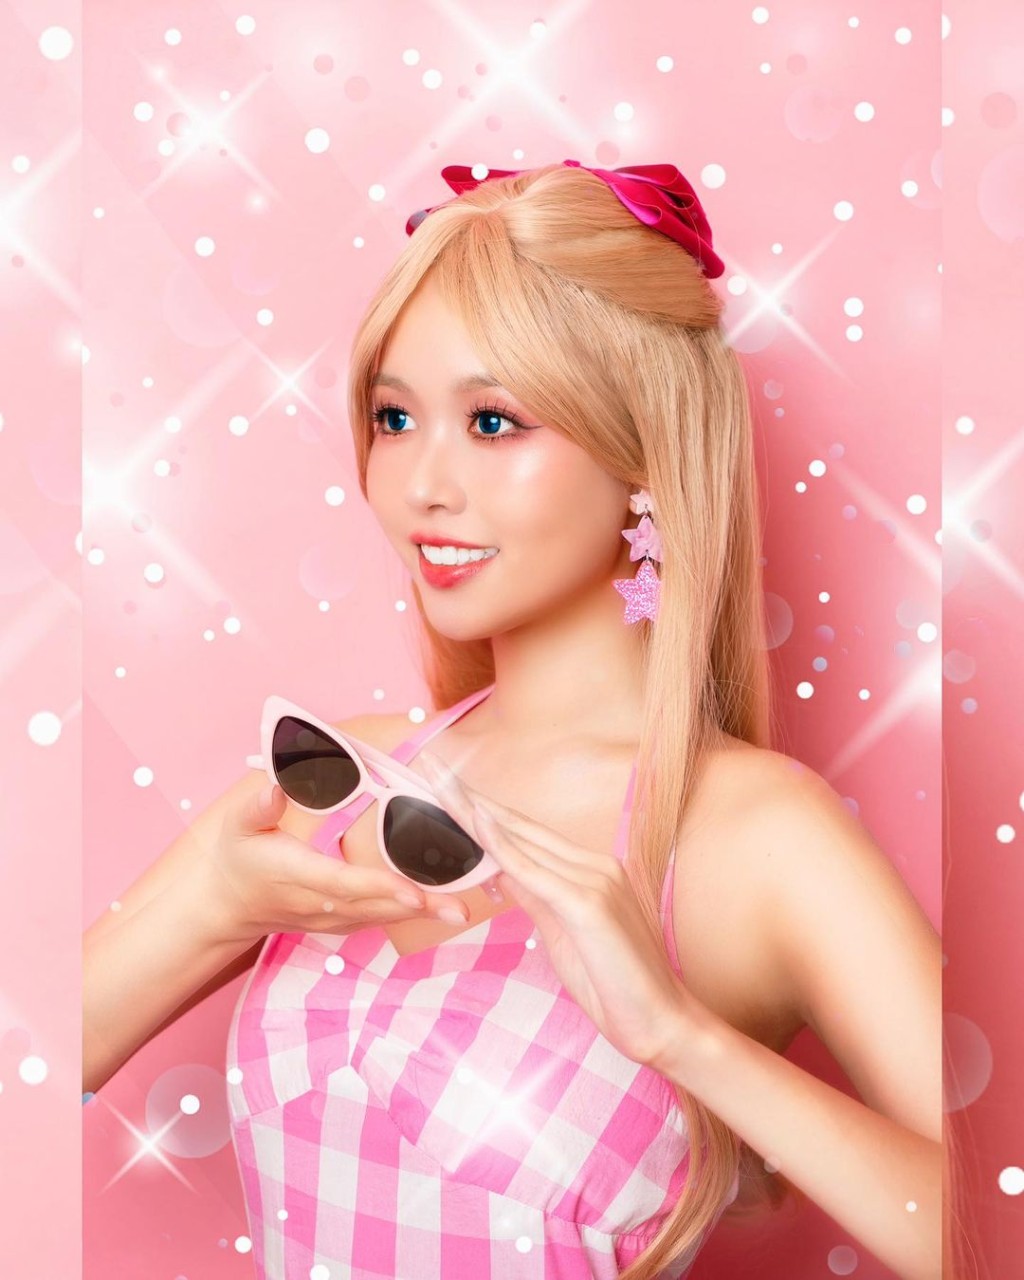 李芷晴穿上粉红装束扮Barbie。